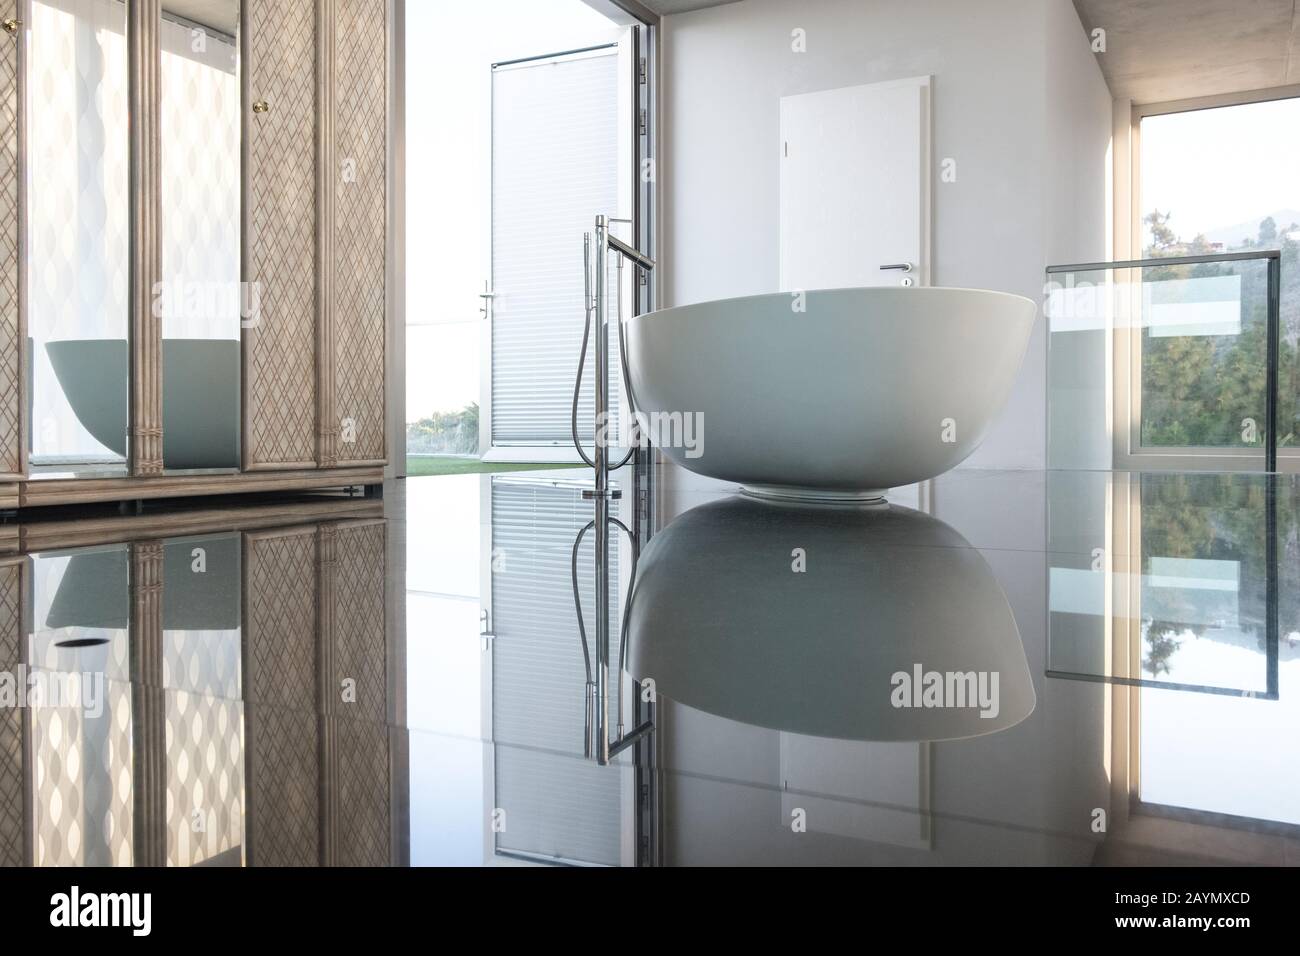 Salle de bains de luxe moderne et indépendante dans une chambre avec sol carrelé, dans une villa sur l'île de la Palma, îles Canaries, Espagne Banque D'Images